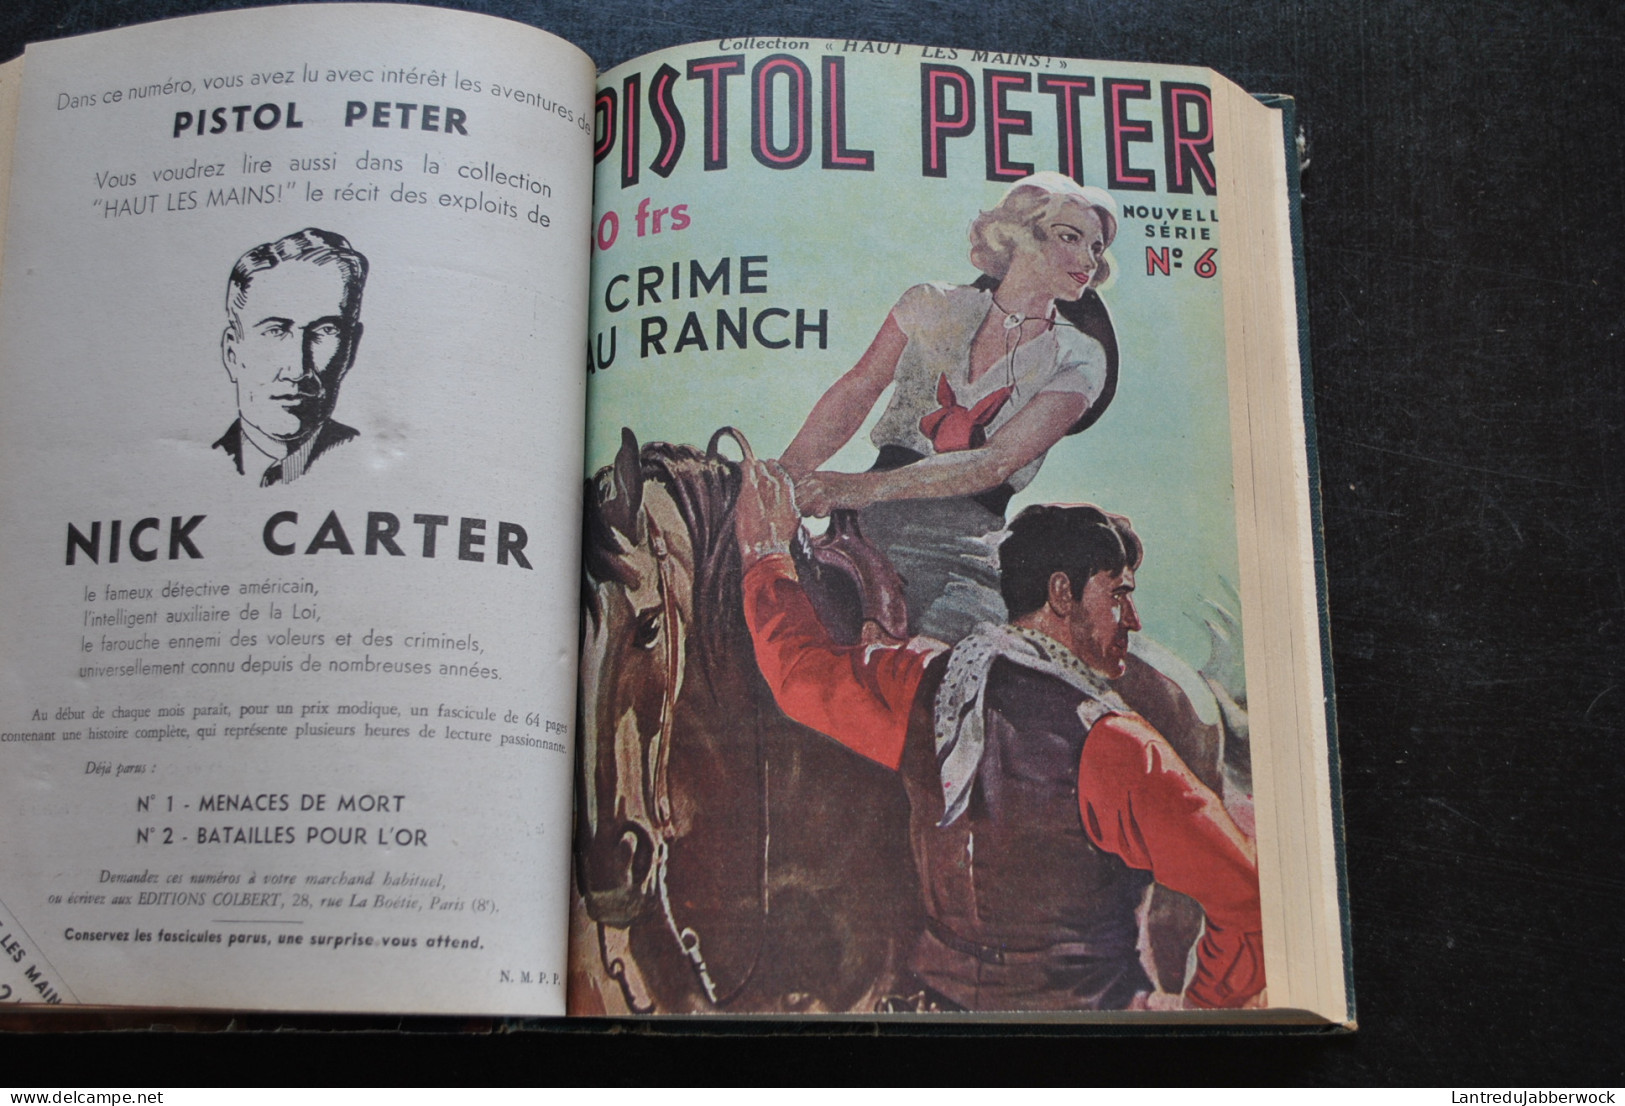 PISTOL PETER six nouvelles aventures 1 Reliure éditeur Nouvelle série n°1 2 6 8 10 12 Editions COLBERT Cowboy Farwest